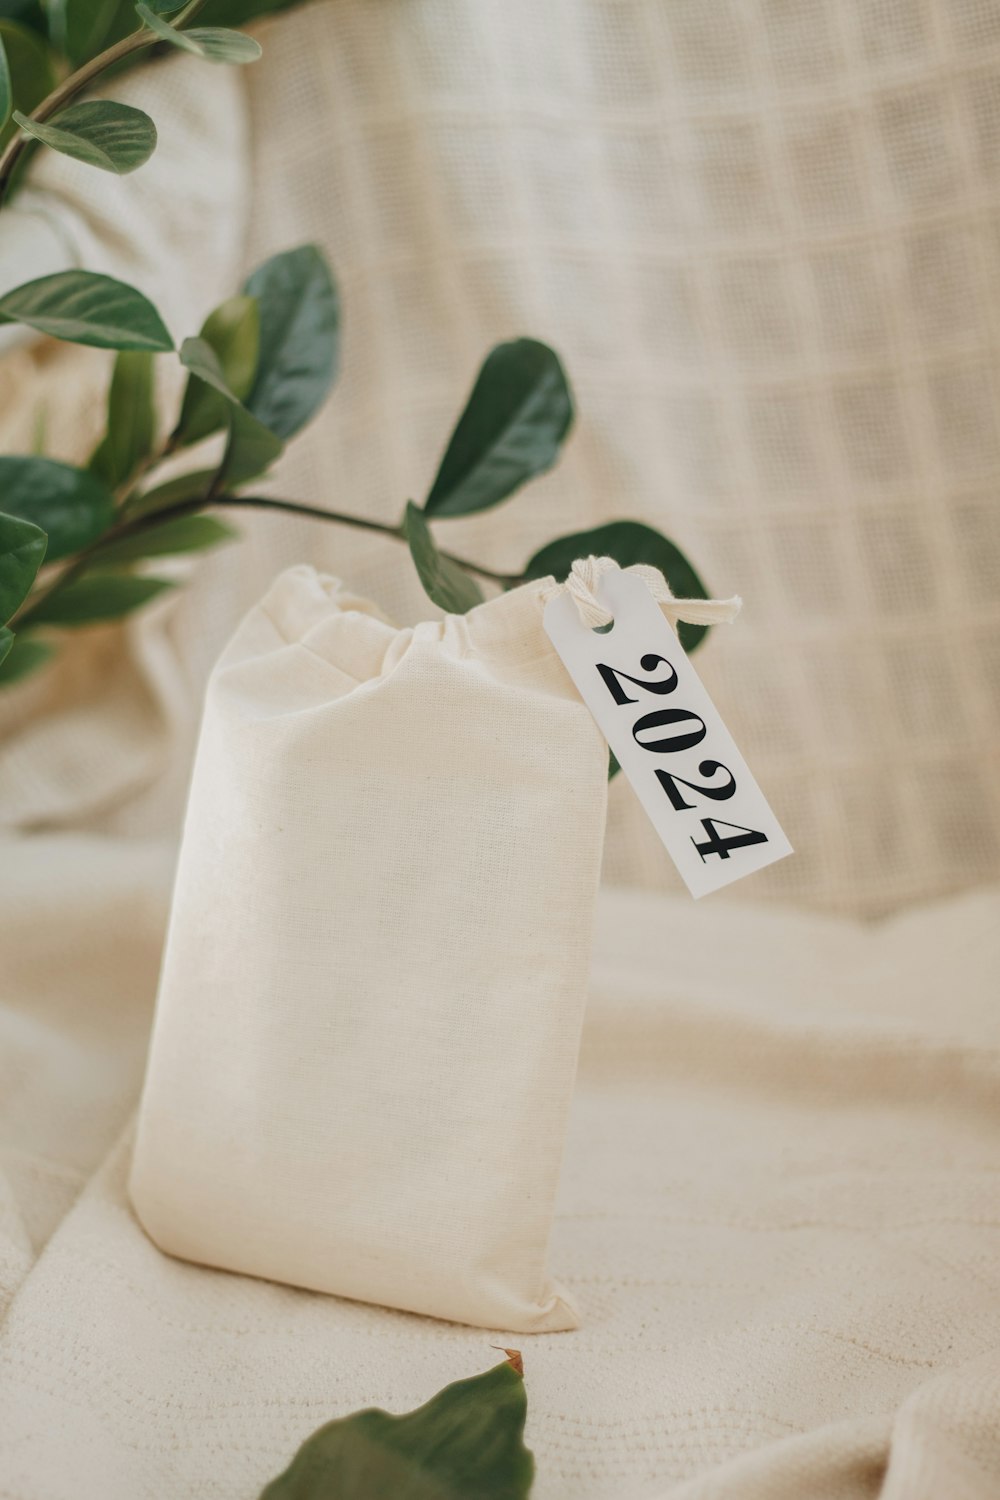 una bolsa blanca con una etiqueta junto a una planta